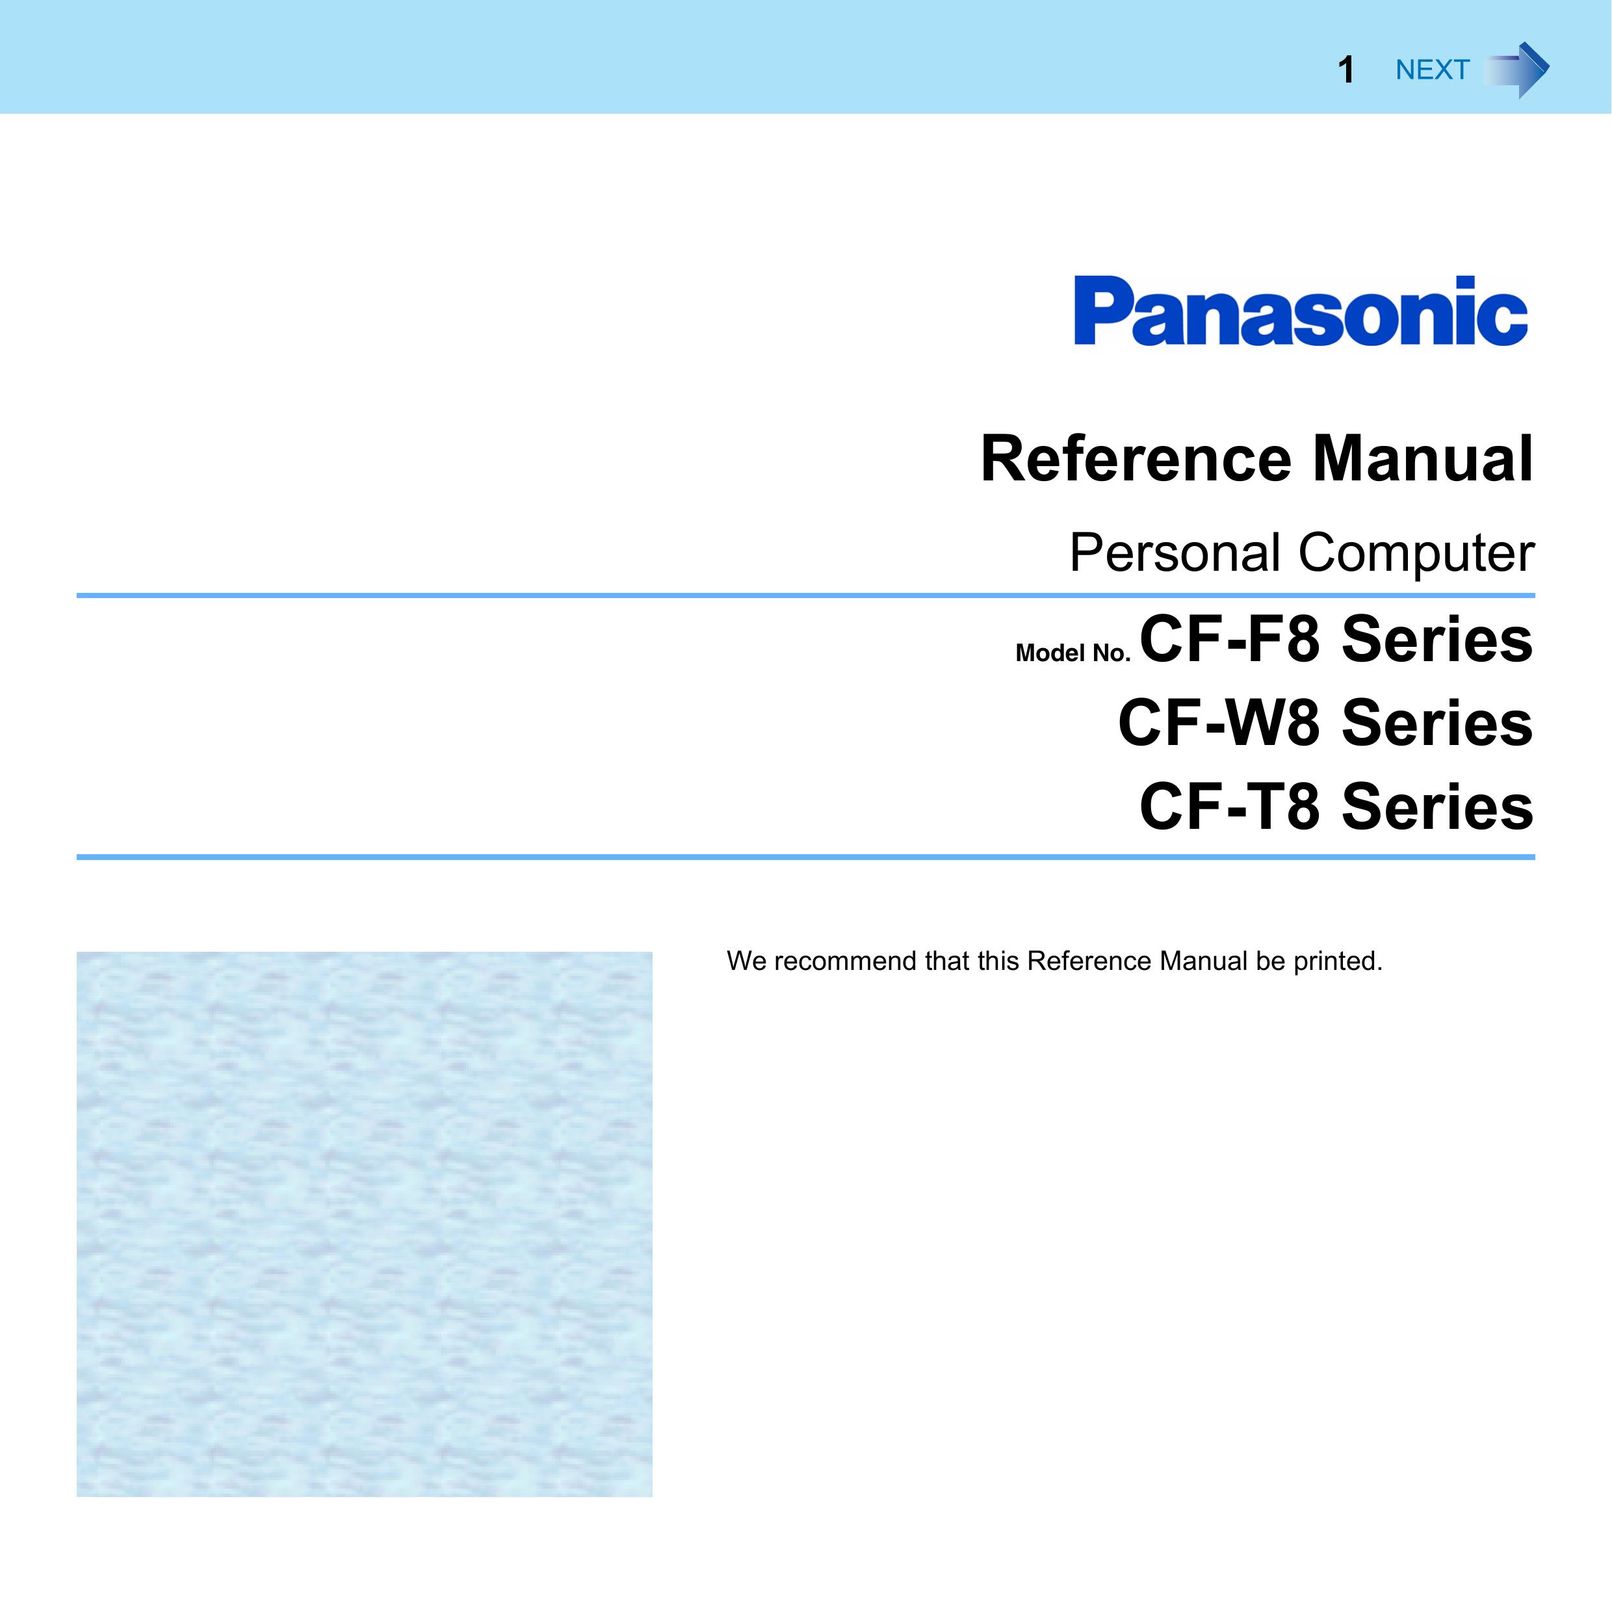 Panasonic CF-W8 Personal Computer User Manual